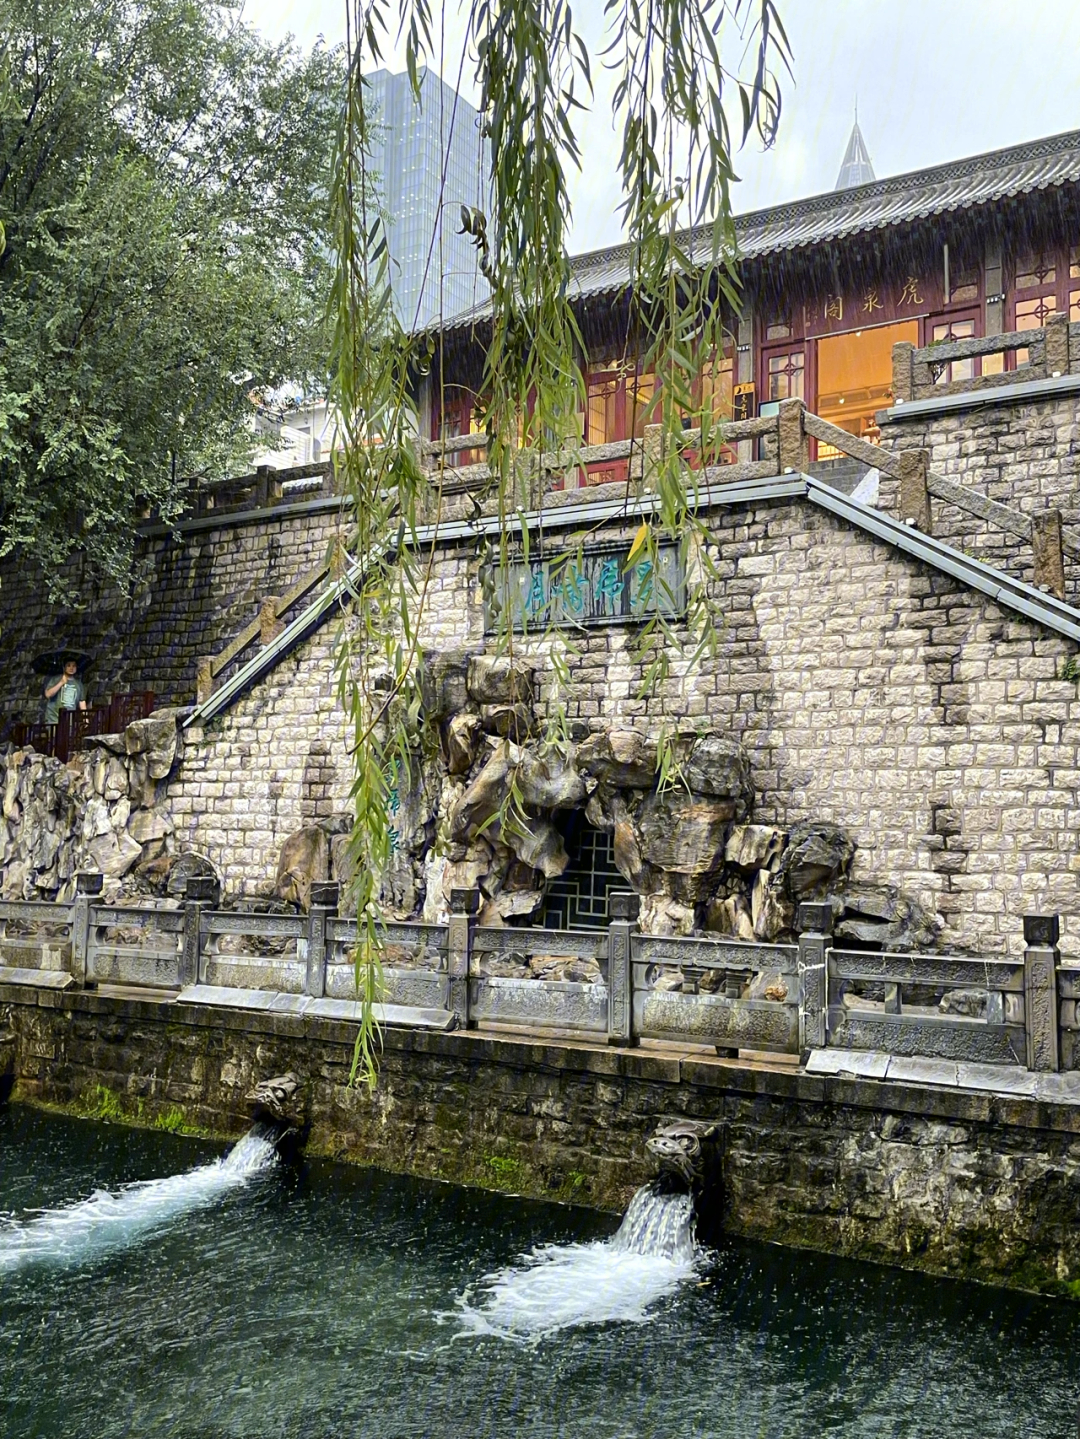 黑虎泉,是济南名泉中最有阳刚之气的一个泉子